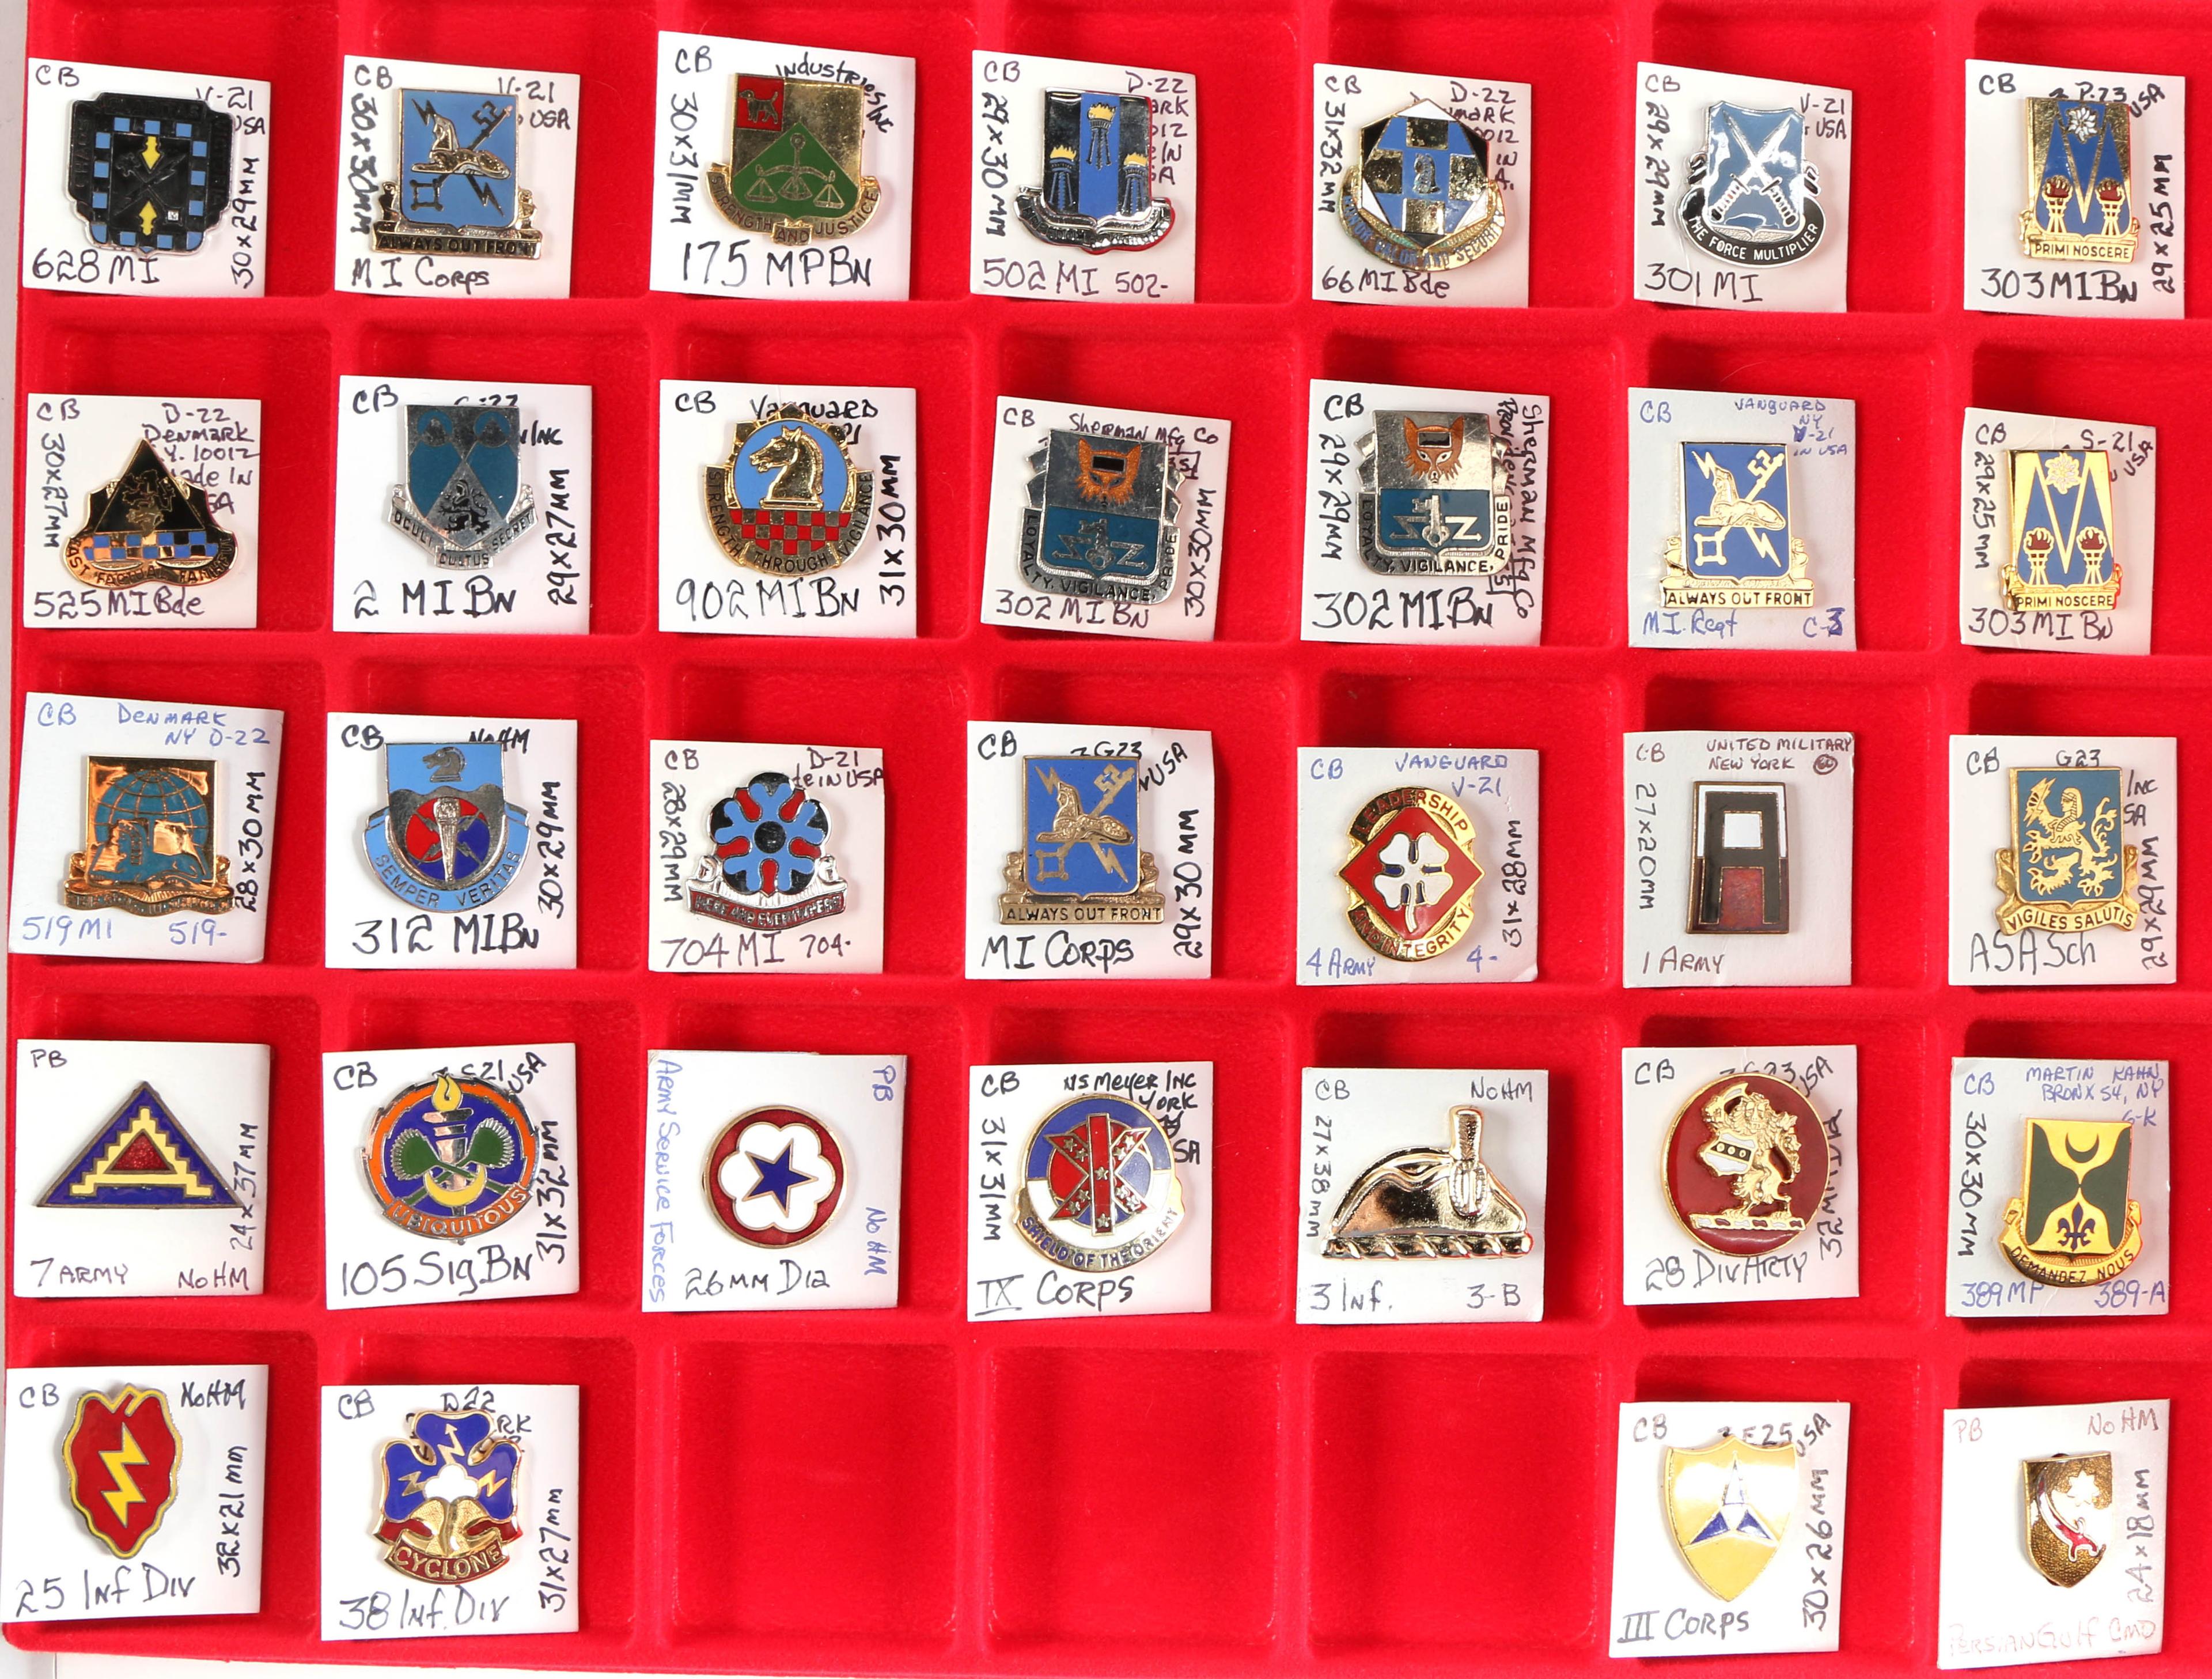 U.S. Army Crest Pins (32)